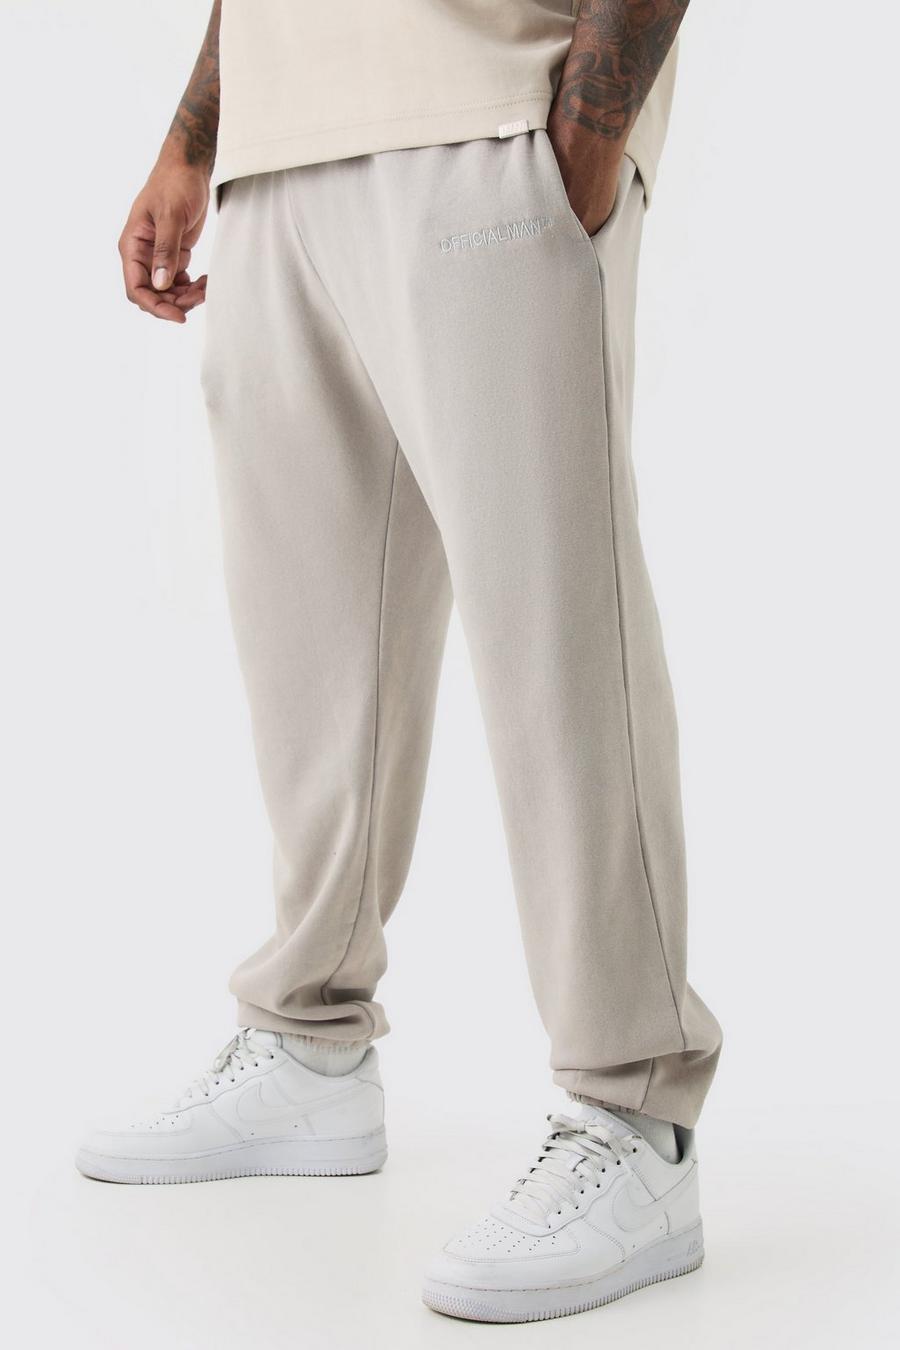 Pantaloni tuta Plus Size in lavaggio slavato Official Core Fit, Light grey